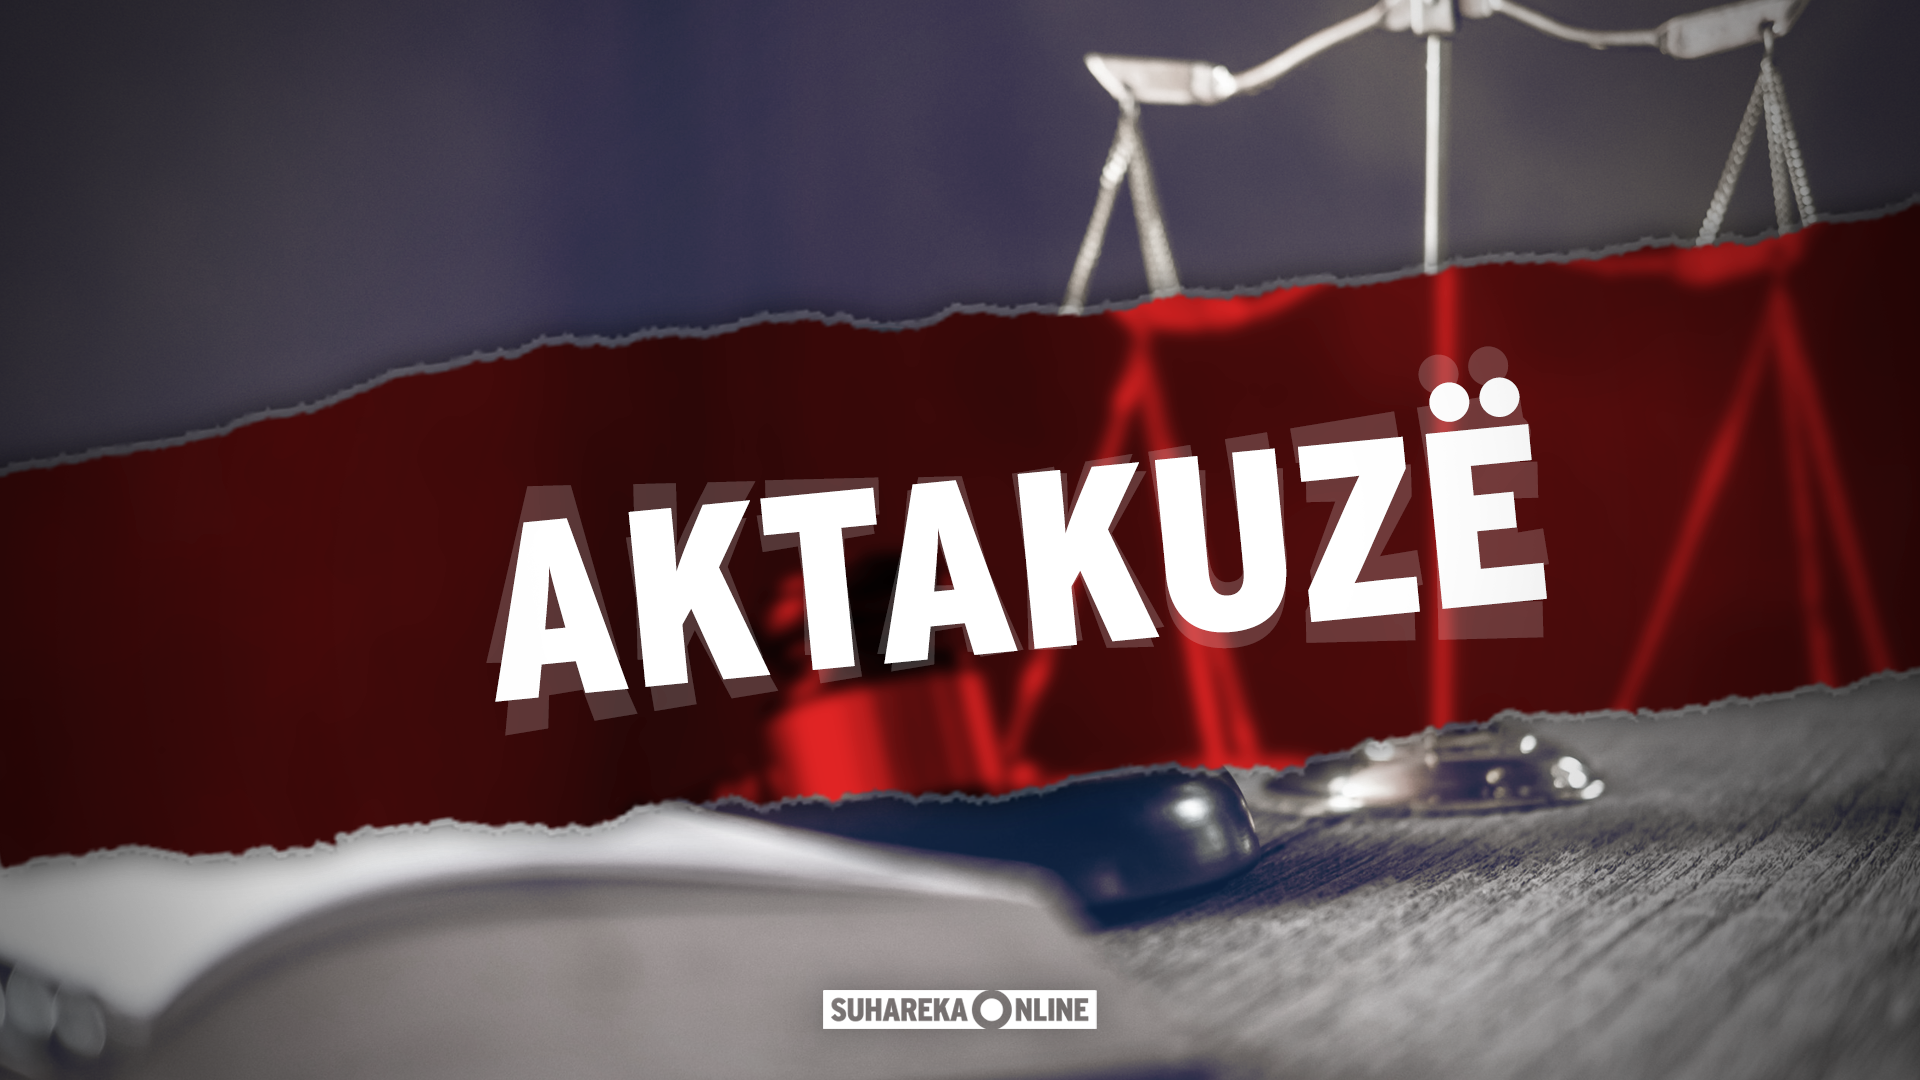 Prokuroria e Prizrenit ngrit 9 aktakuza kundër 12 personave të dyshuar për vepra të ndryshme penale